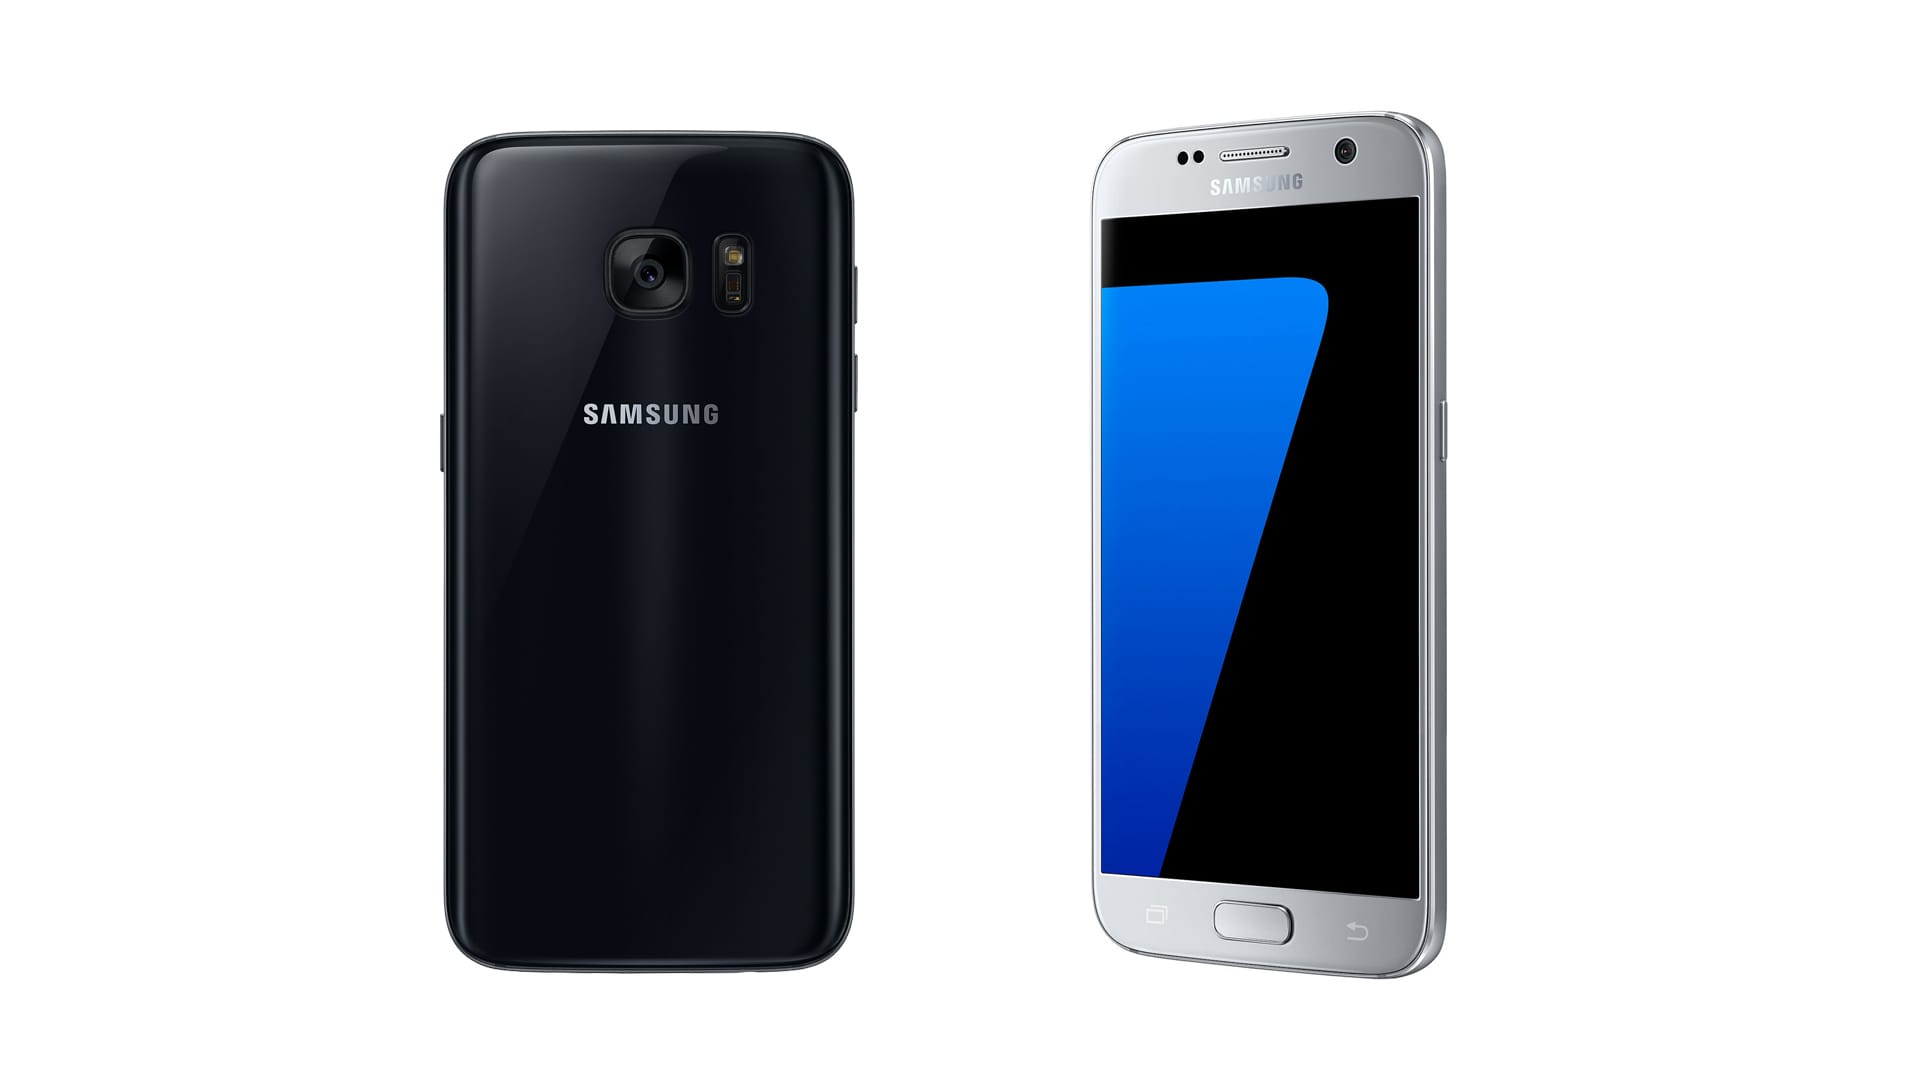 Das kompaktere Samsung Galaxy S7 ist sehr viel stabiler als sein großer Bruder. Mit einem Preis von rund 700 Euro ist es zudem knapp 100 Euro günstiger.